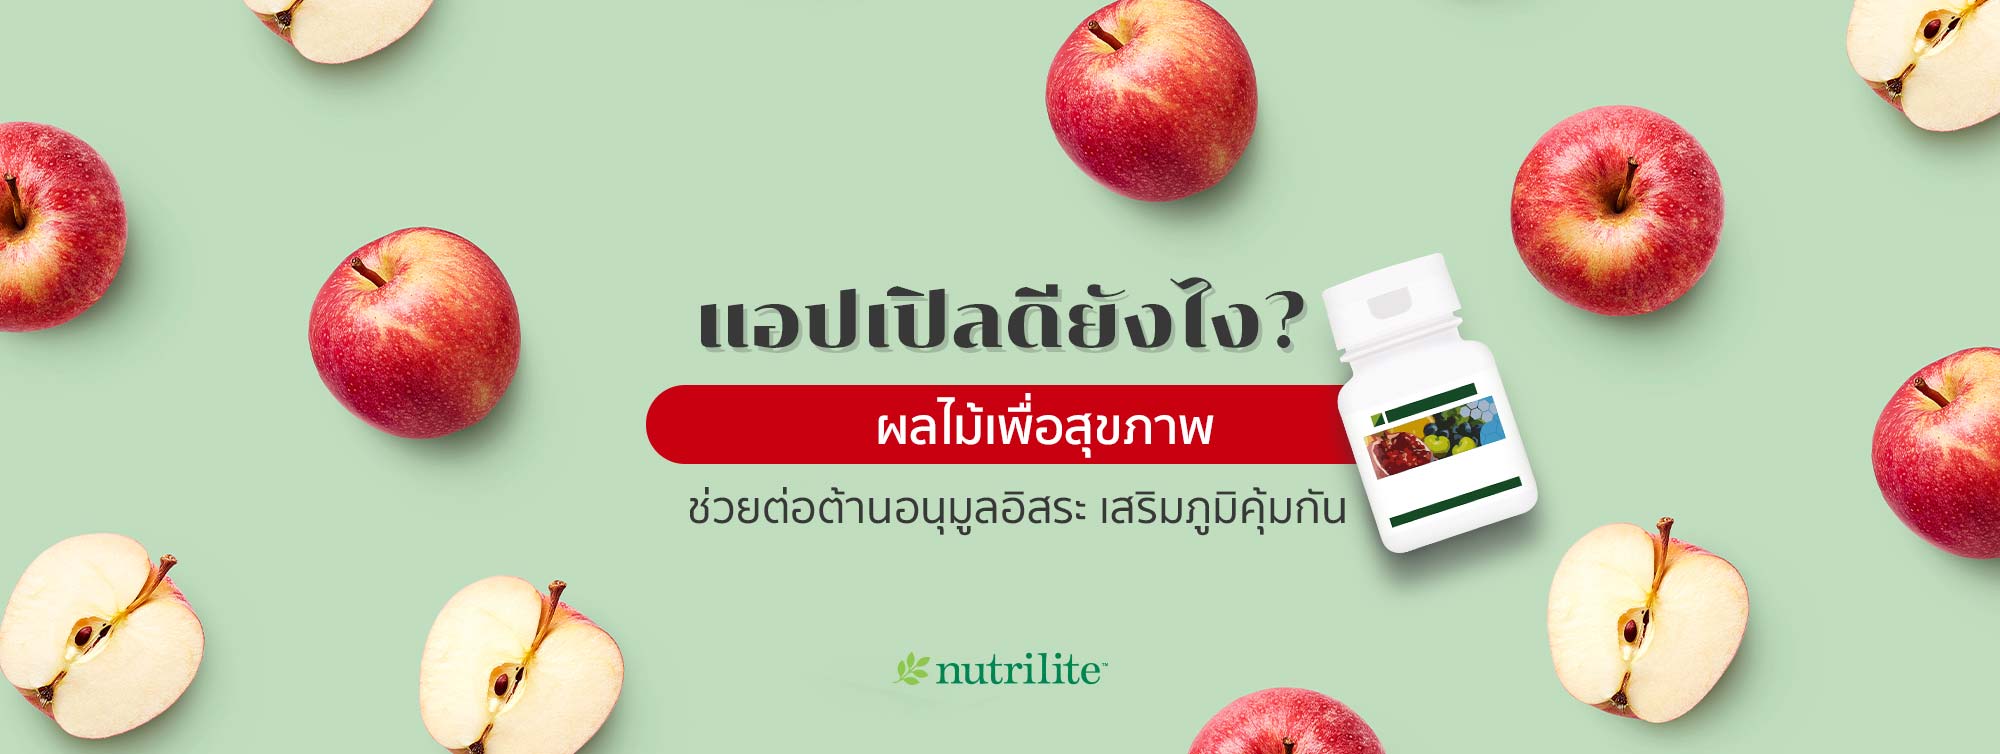 แอปเปิลดียังไง? ผลไม้เพื่อสุขภาพ ช่วยต่อต้านอนุมูลอิสระ เสริมภูมิคุ้มกัน